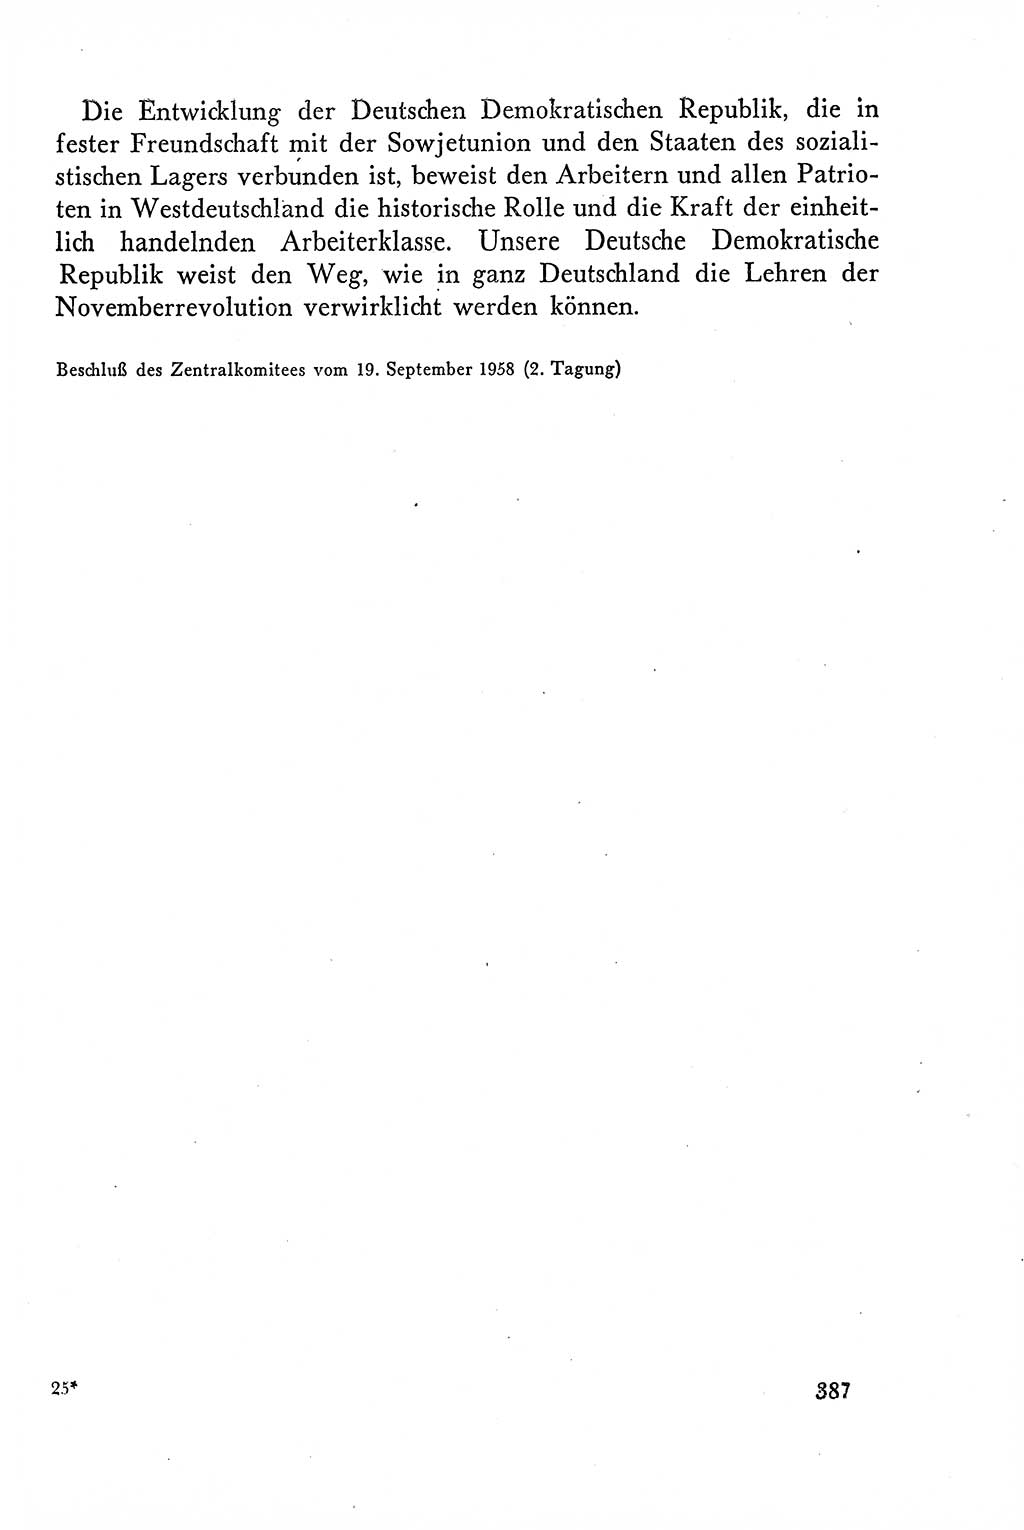 Dokumente der Sozialistischen Einheitspartei Deutschlands (SED) [Deutsche Demokratische Republik (DDR)] 1958-1959, Seite 387 (Dok. SED DDR 1958-1959, S. 387)